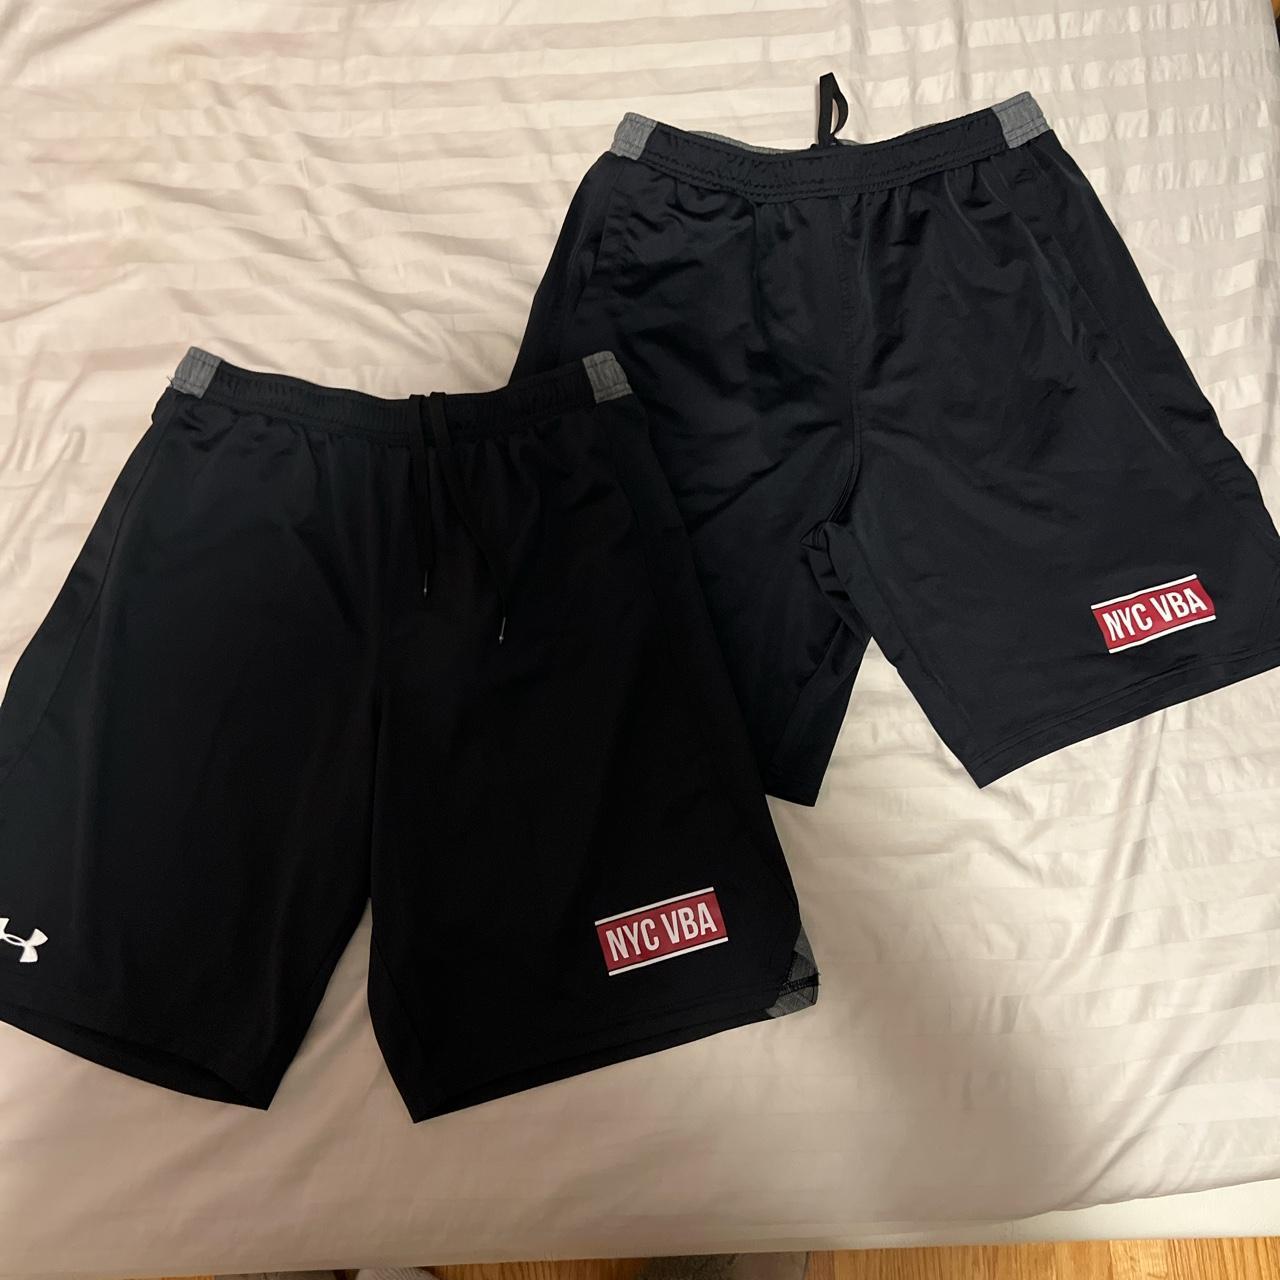 Under Armor Volleyball Shorts (set) Left: Medium, no - Depop